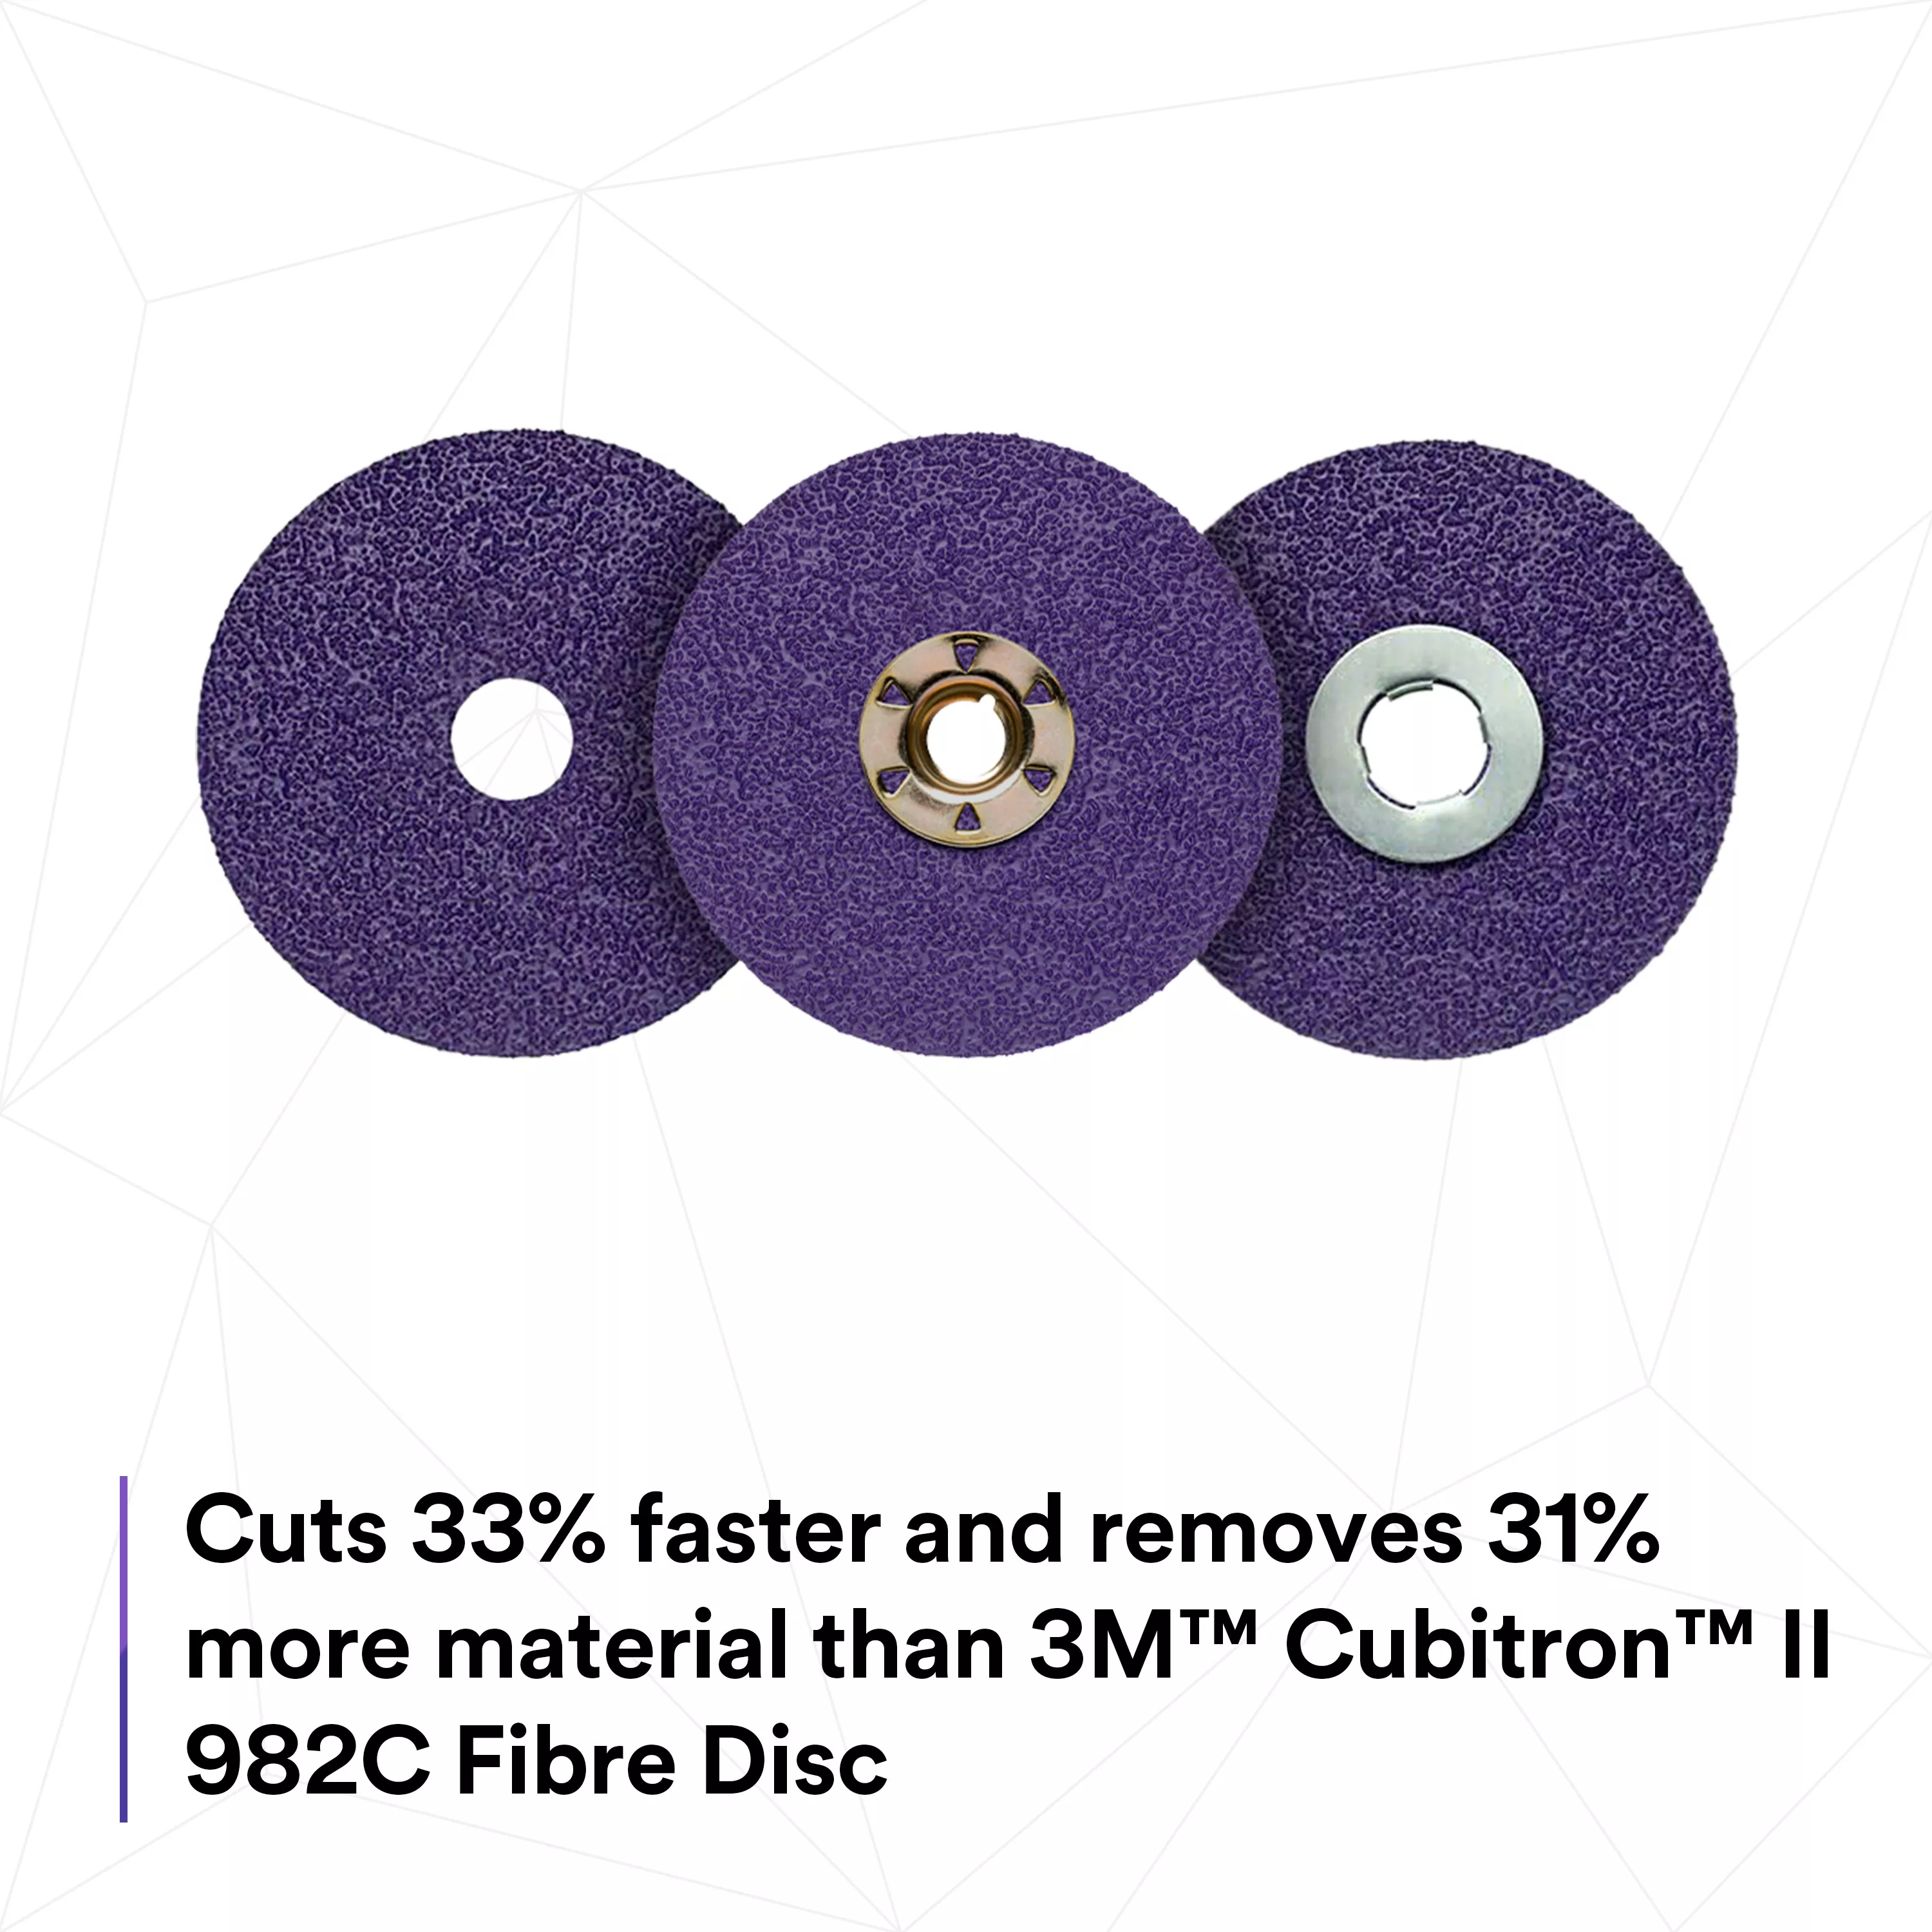 SKU 7100246523 | 3M™ Cubitron™ II Fibre Disc 982CX Pro